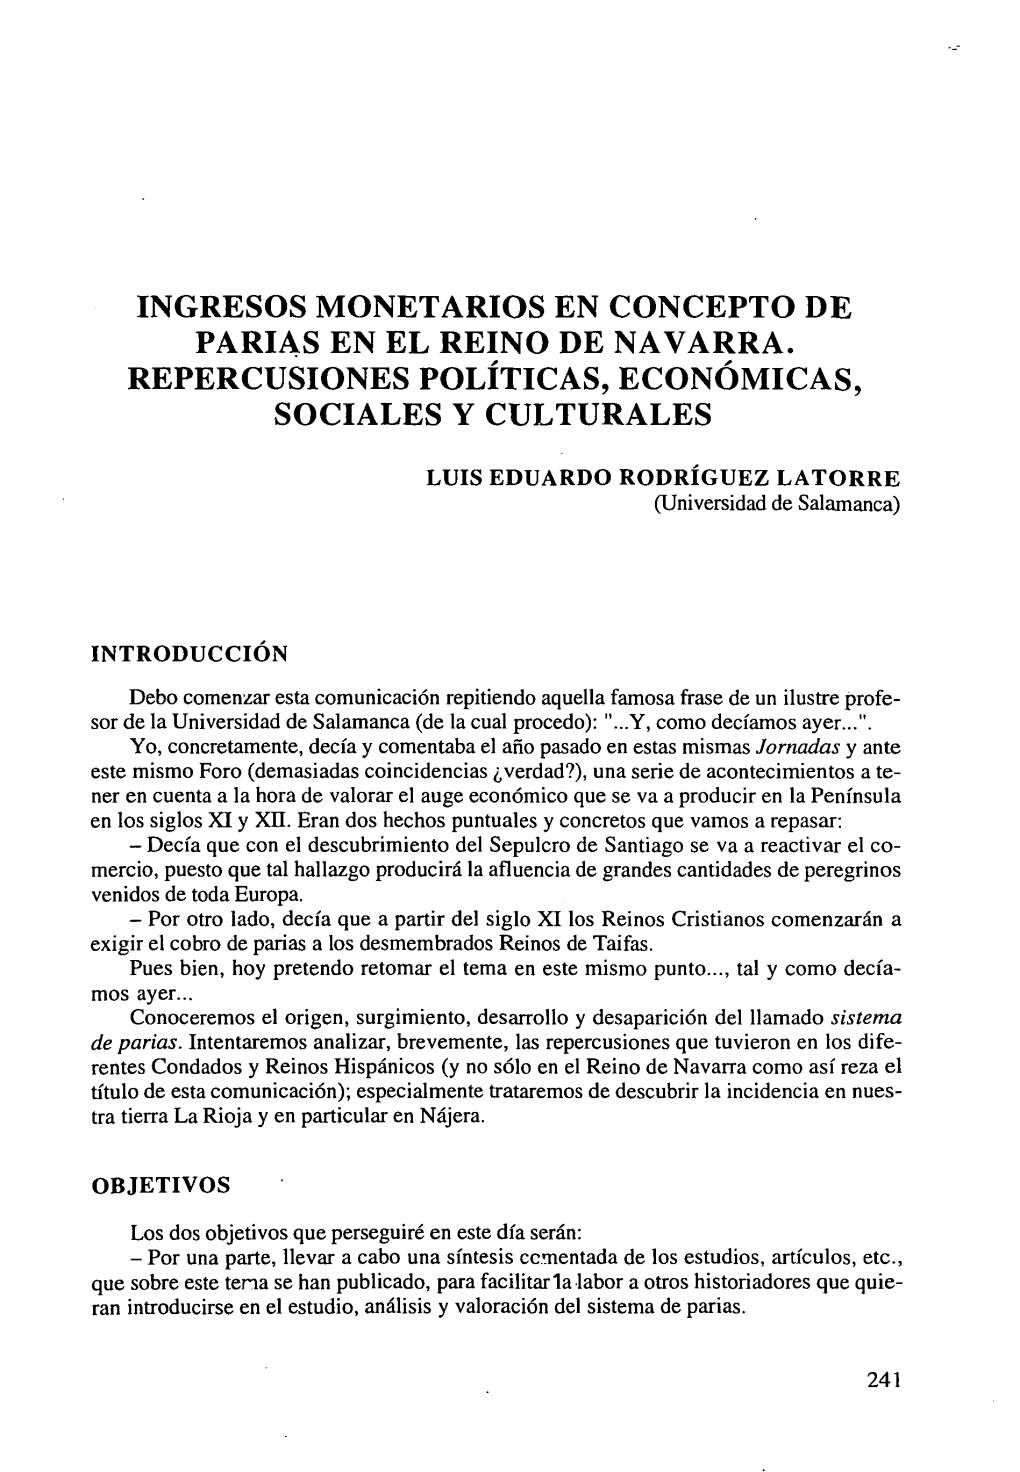 Ingresos Monetarios En Concepto De Parias En El Reino De Navarra. Repercusiones Políticas, Económicas, Sociales Y Culturales